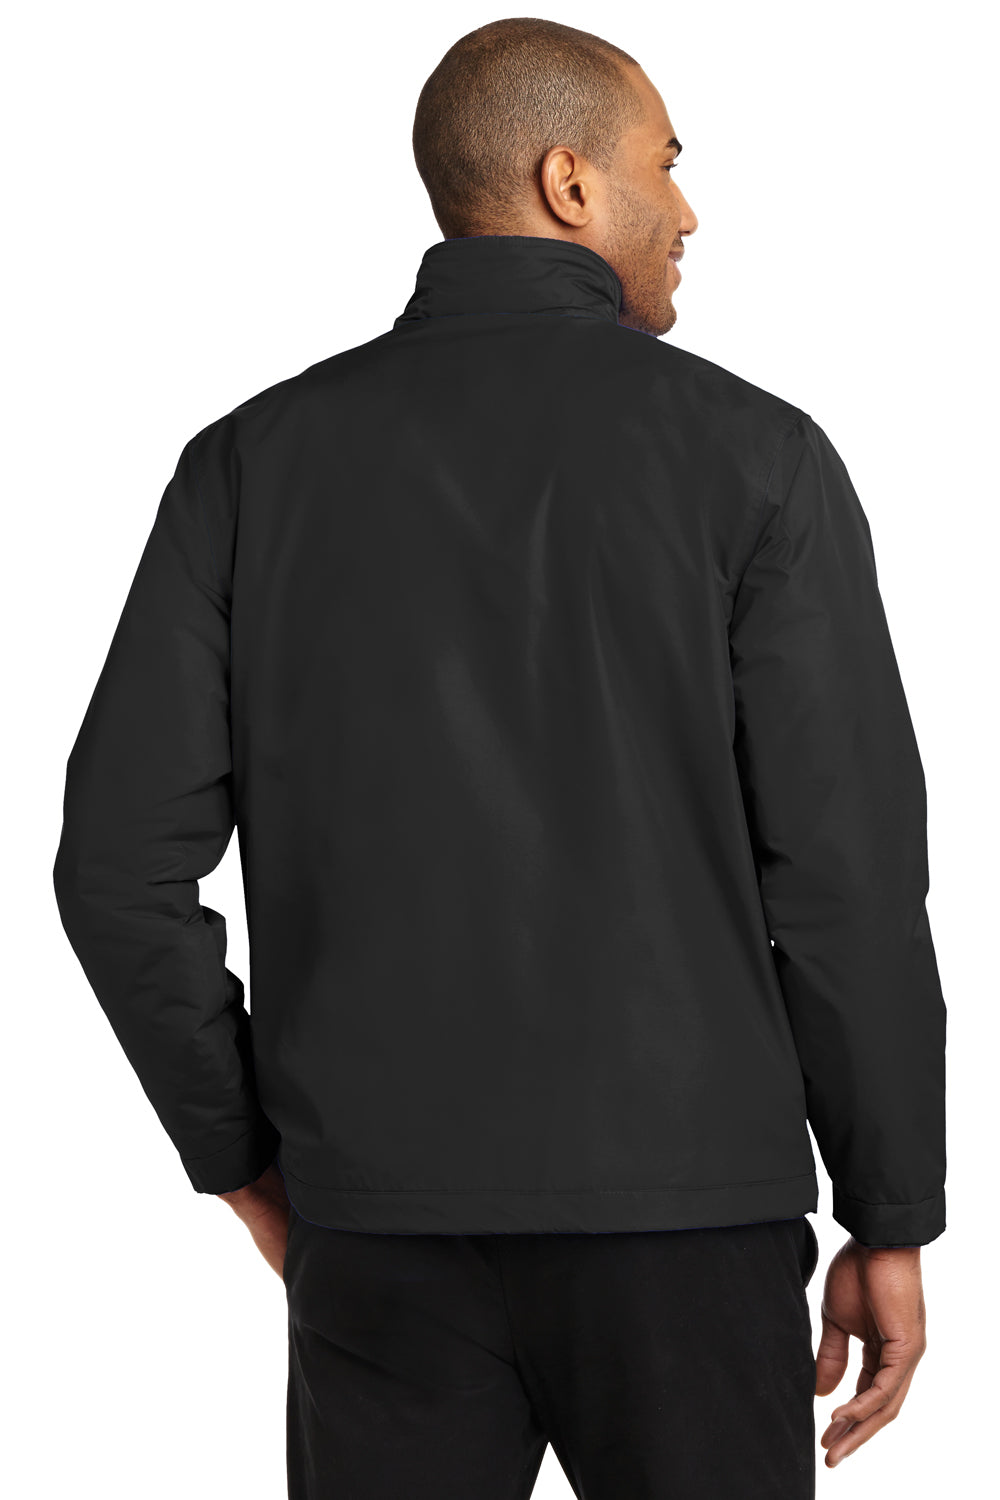 Port Authority J354 Mens Challenger II Wind & Water Resistant Full Zip Jacket Black Back